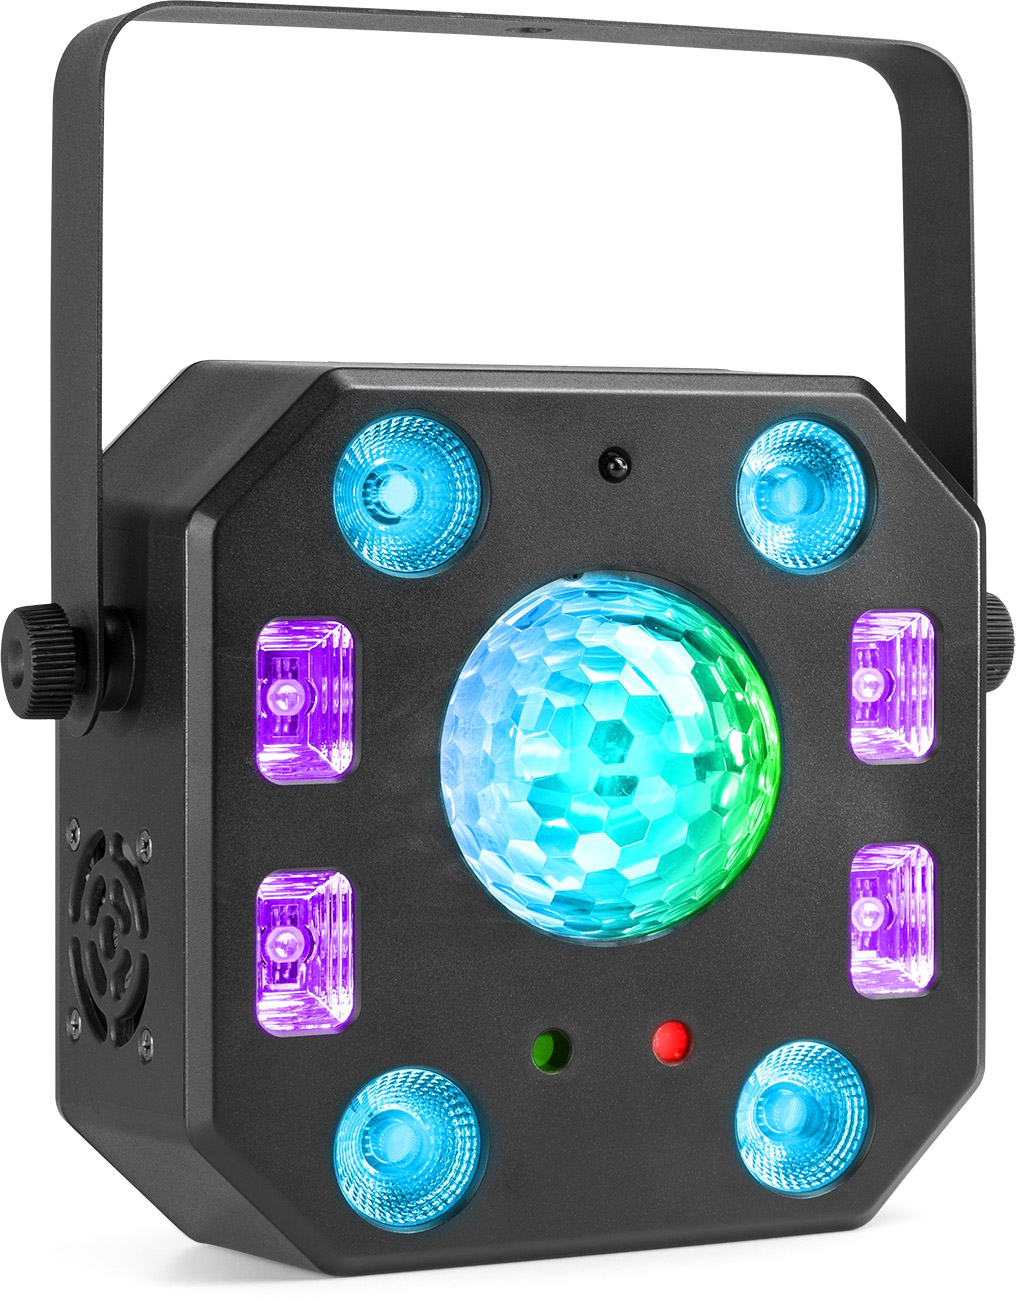 Projecteur laser avec activation par le son - 30 W - 9 canaux DMX - 4 modes  - Rouge et bleu